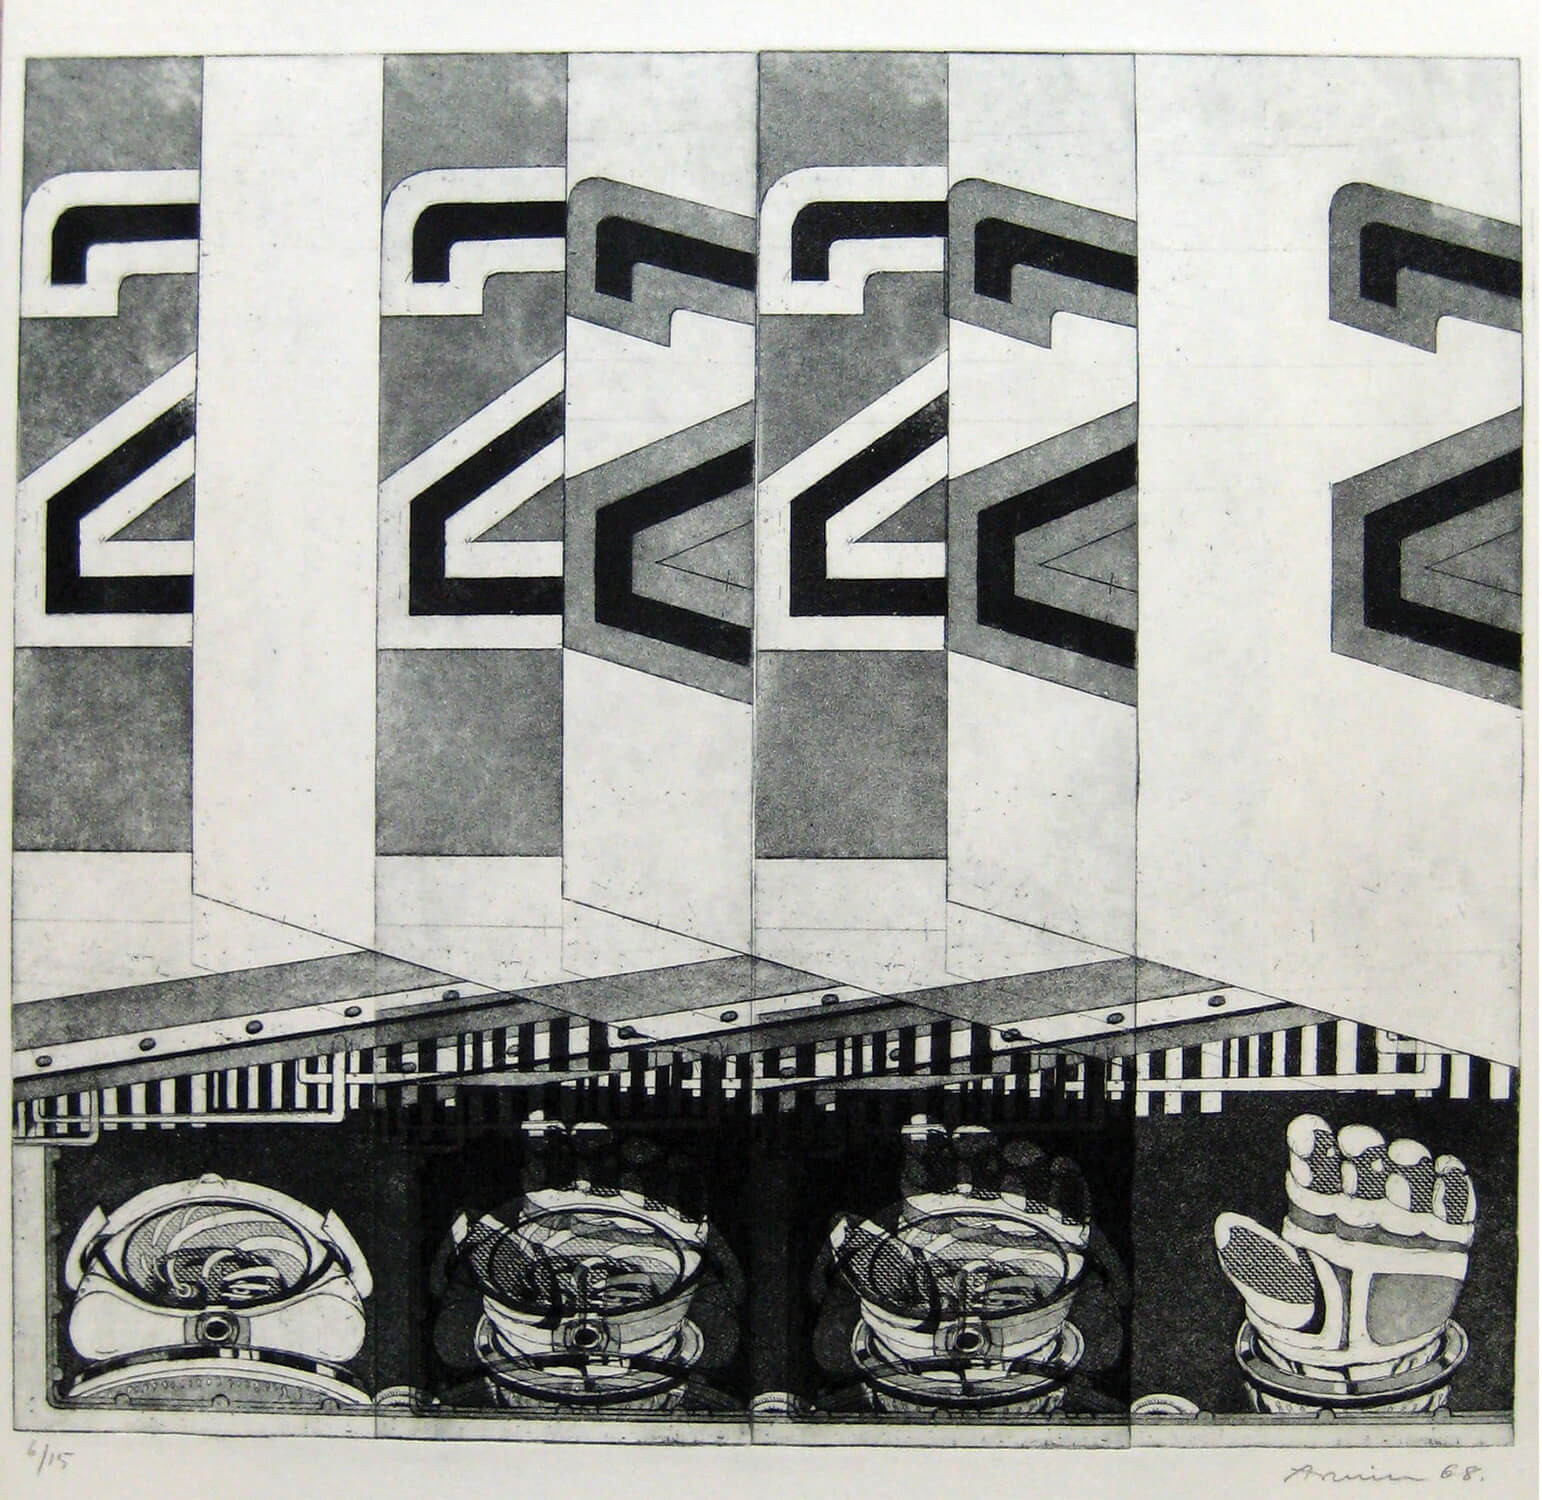 Bettina von Arnim, two, 1968, Radierung, Auflage: 15, 34,5 x 38,5 cm (nur als Mappe mit 5 Radierungen)